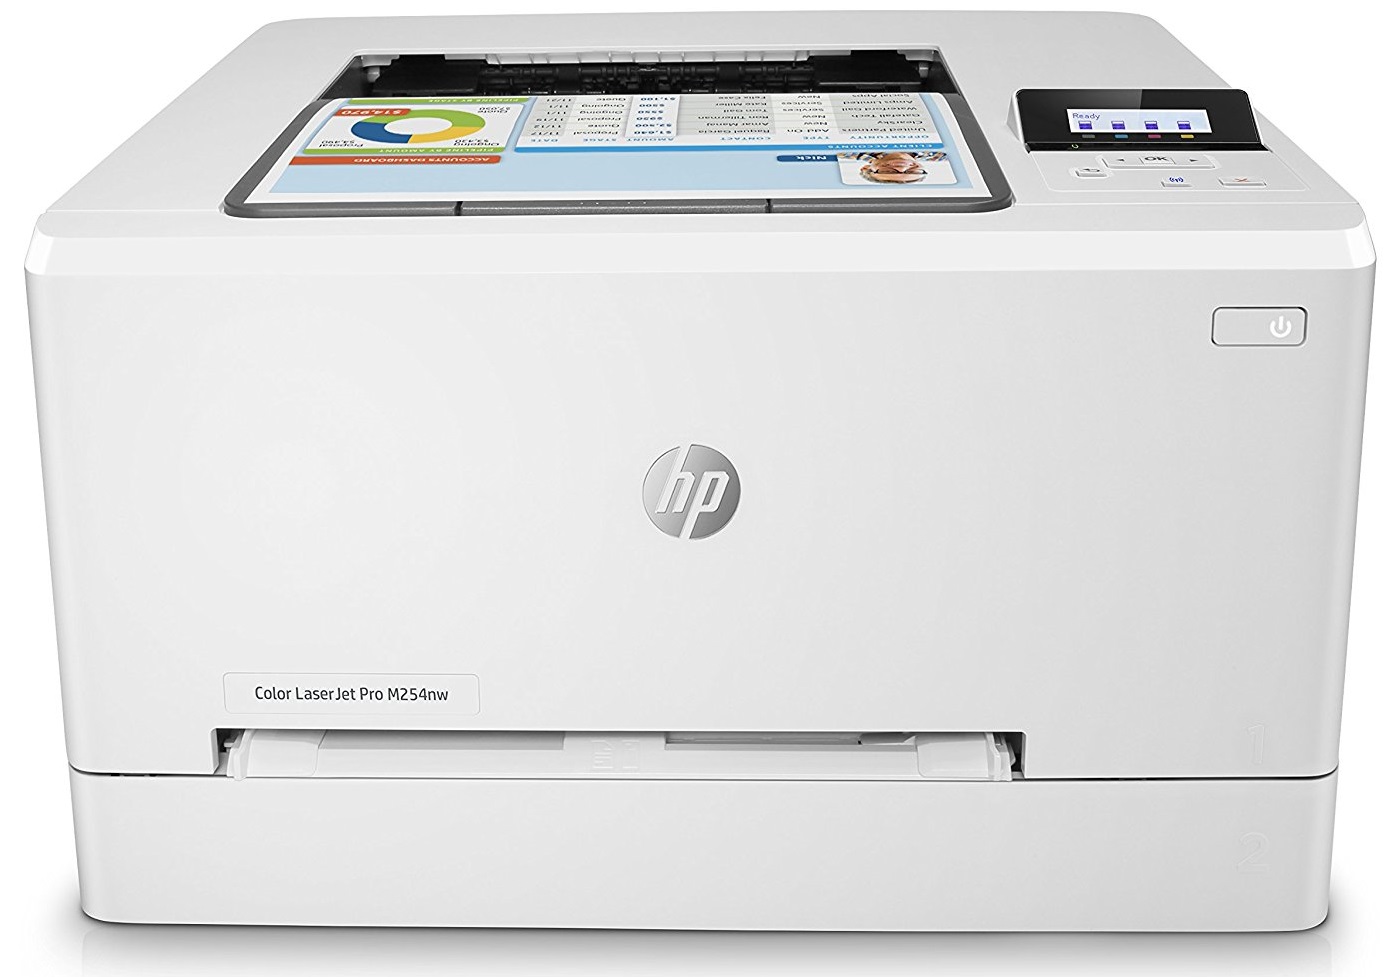 چاپگر-پرینتر لیزری اچ پي-HP M254nw -Color LaserJet Pro Printer